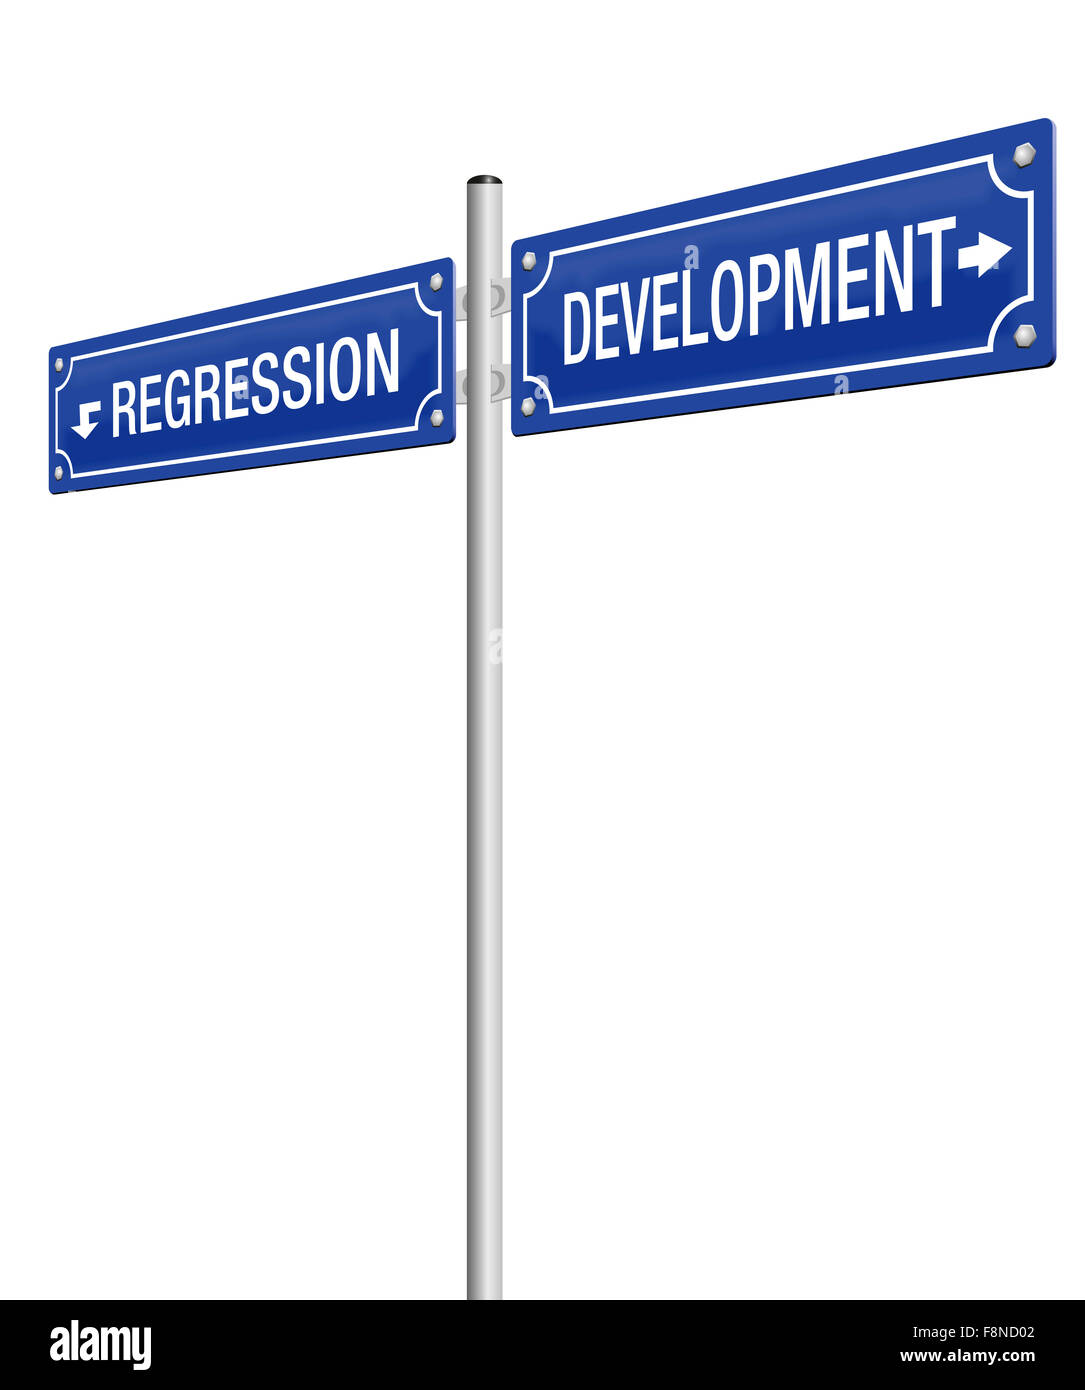 Entwicklung und REGRESSION, auf zwei Wegweiser geschrieben. Abbildung auf weißem Hintergrund. Stockfoto